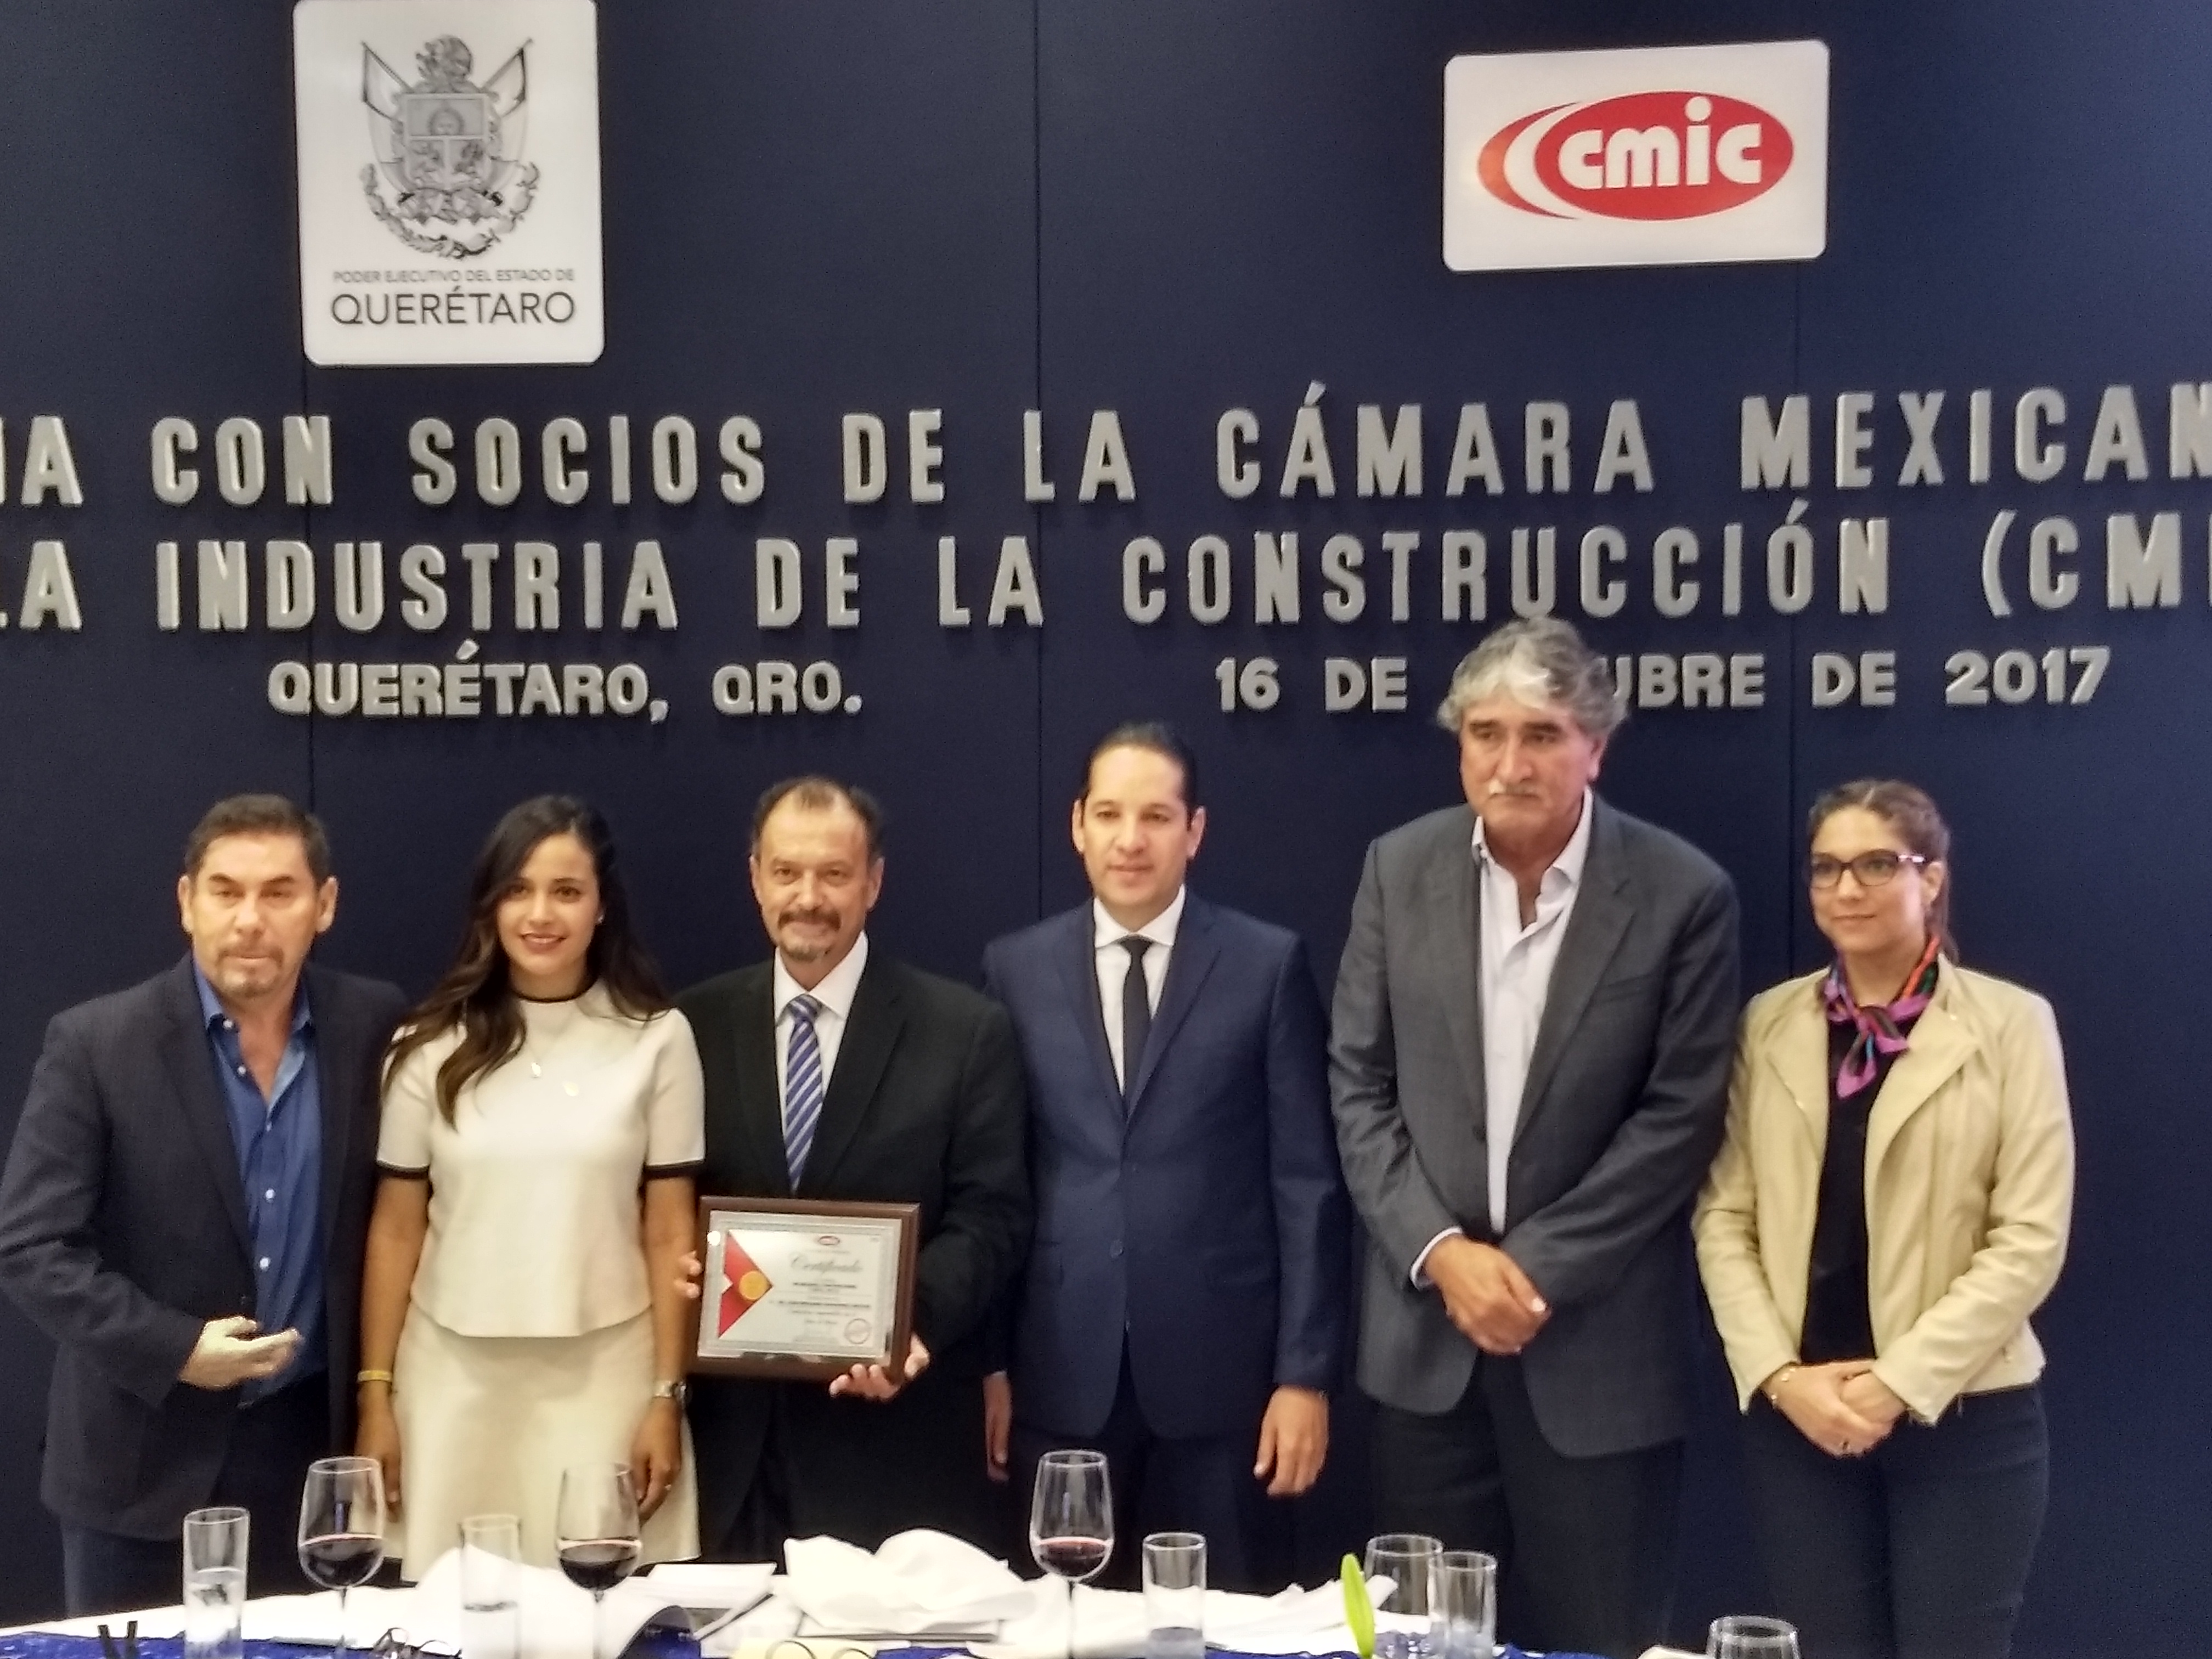  Confianza en Querétaro genera empleo en la entidad, destaca FDS en encuentro con la CMIC